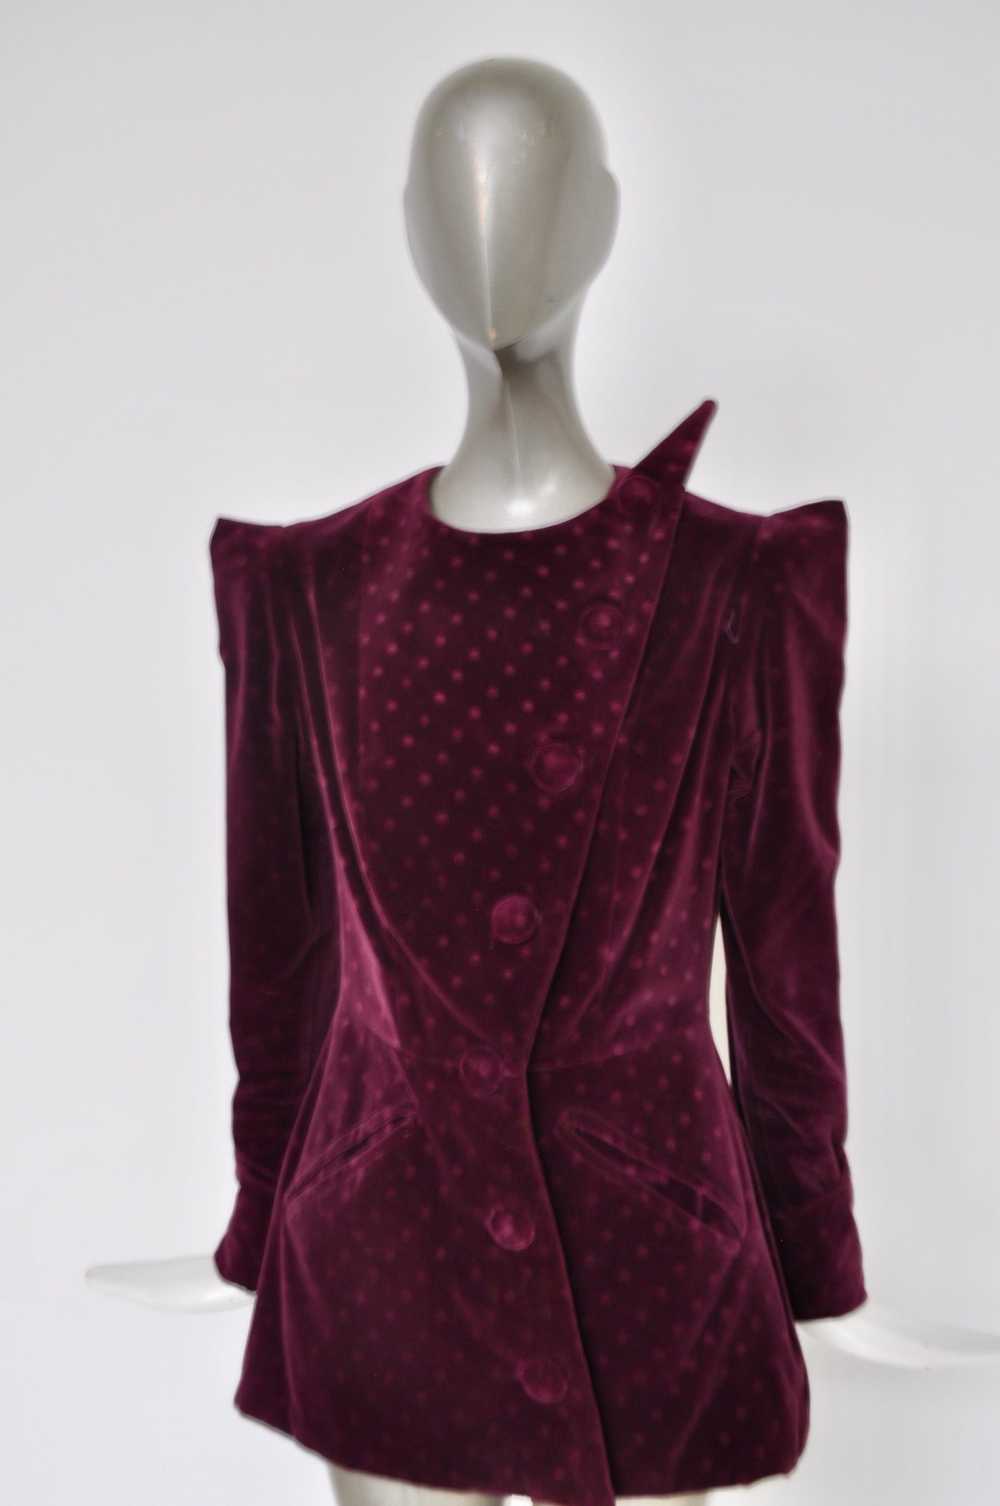 Rare Schiaparelli avantgarde velvet jacket 1940s - image 2